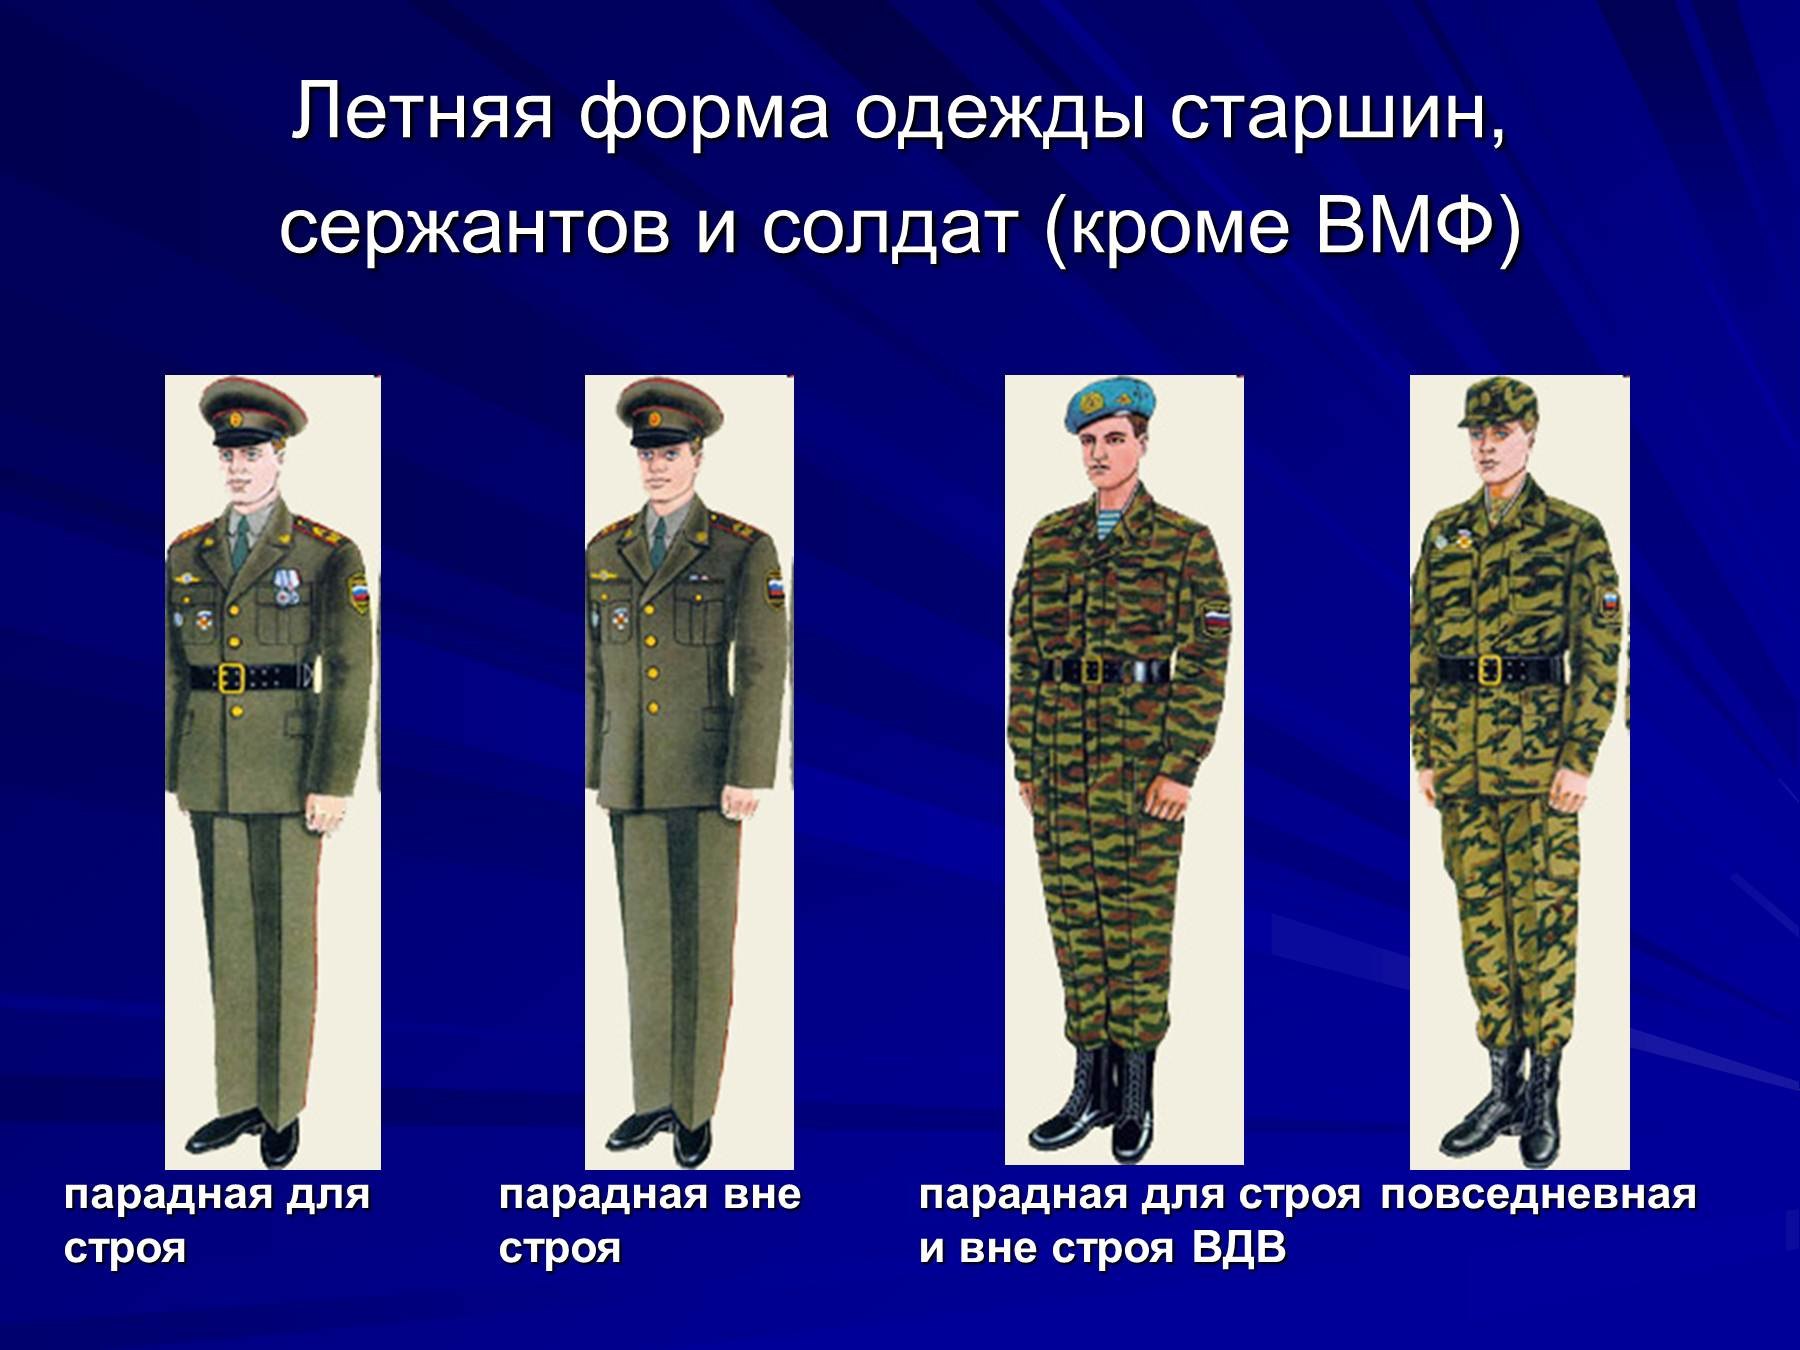 Летняя форма одежды офицеров и прапорщиков кроме ВМФ